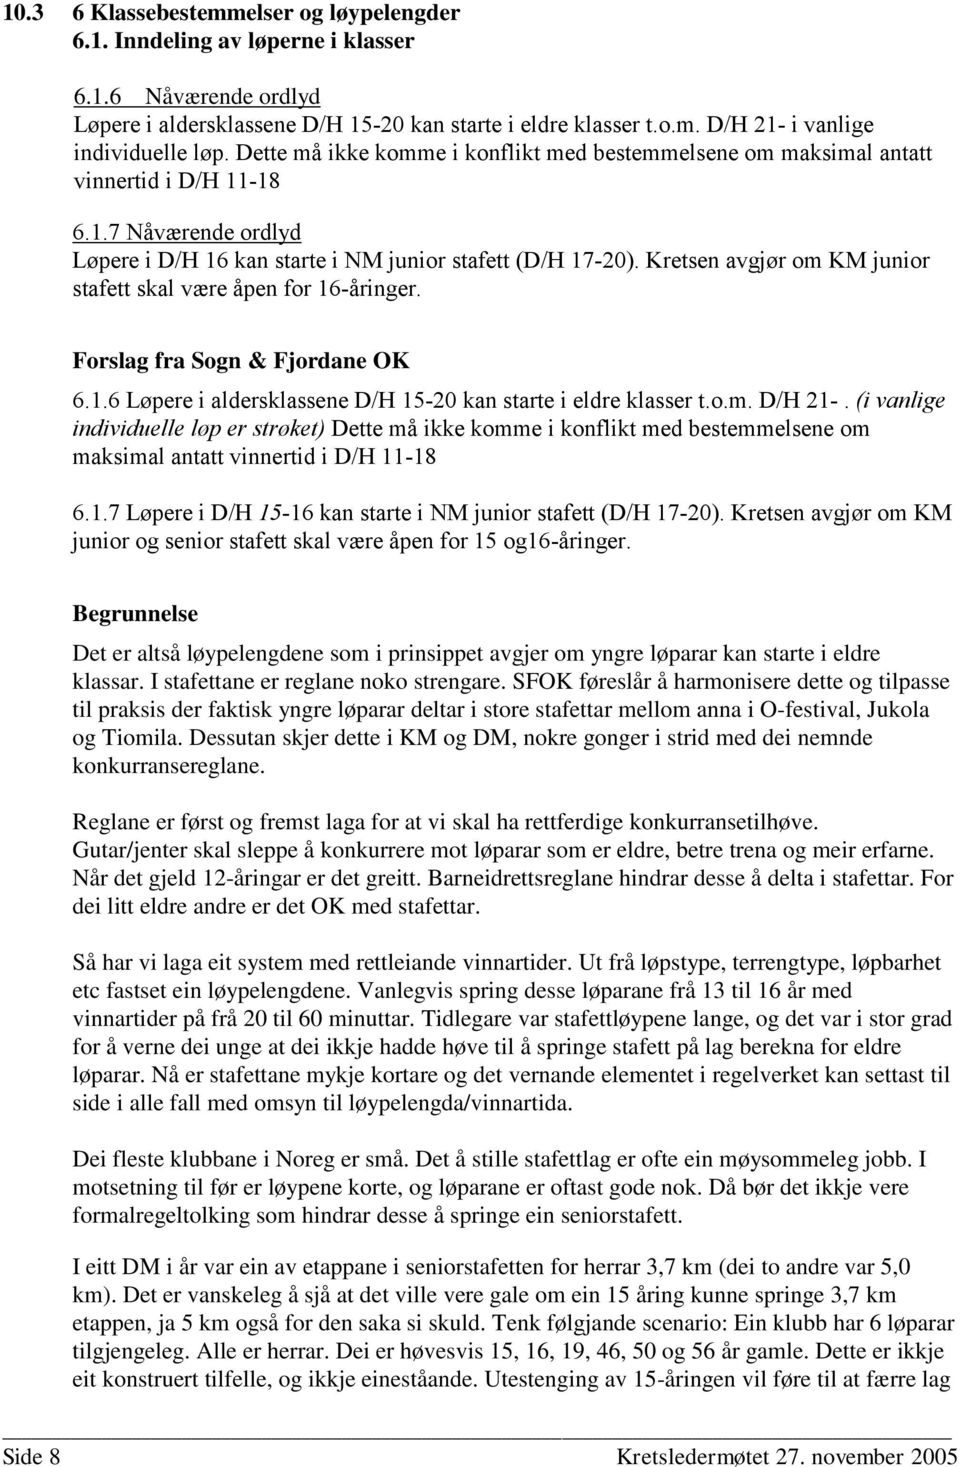 Kretsen avgjør om KM junior stafett skal være åpen for 16-åringer. Forslag fra Sogn & Fjordane OK 6.1.6 Løpere i aldersklassene D/H 15-20 kan starte i eldre klasser t.o.m. D/H 21-.